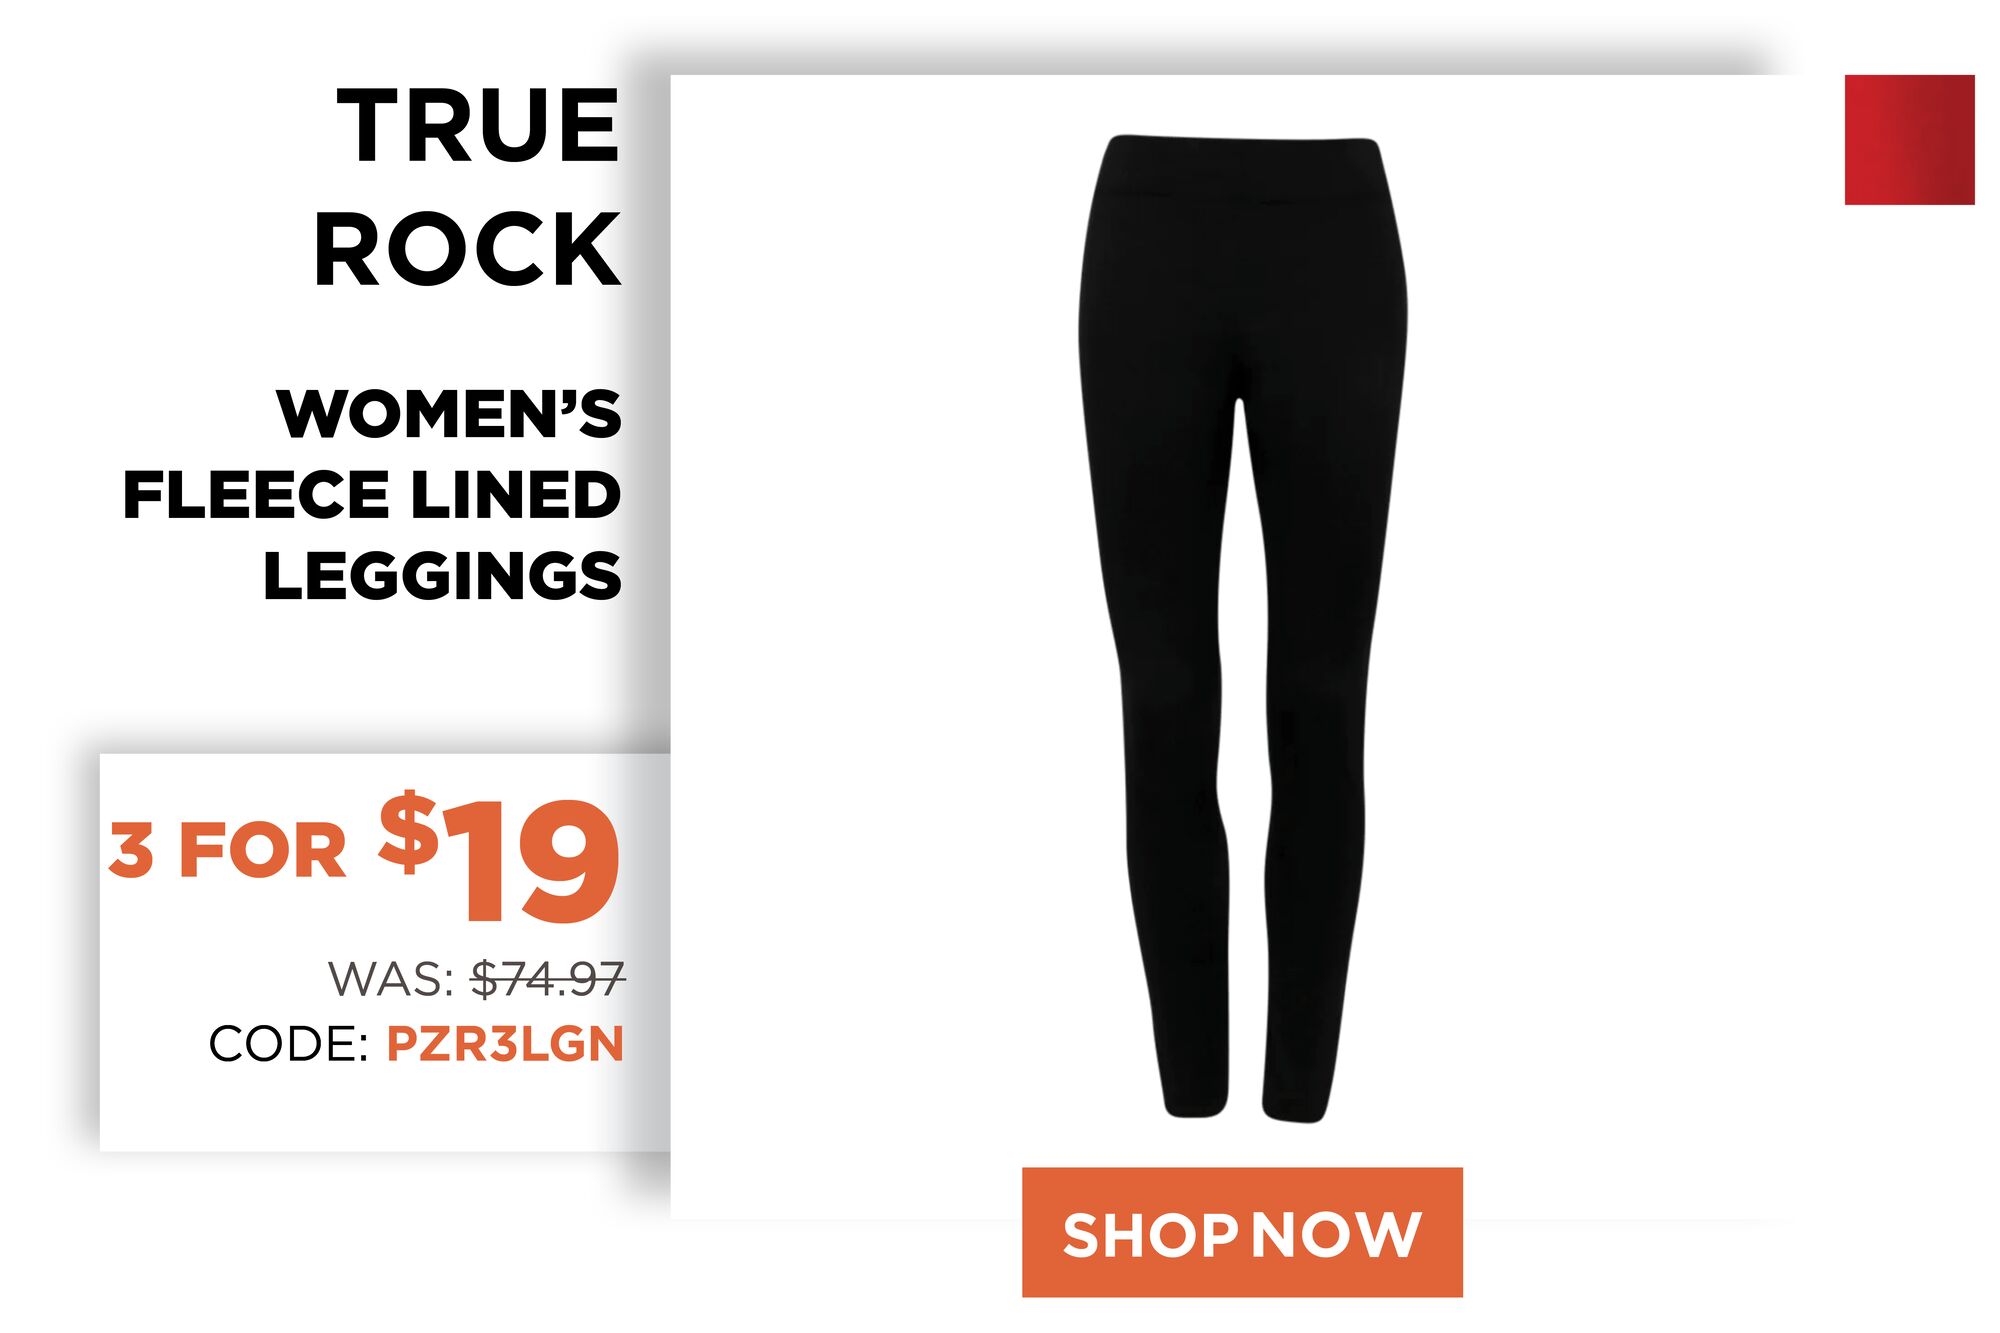 True Rock Women's Fleece Lined Leggings